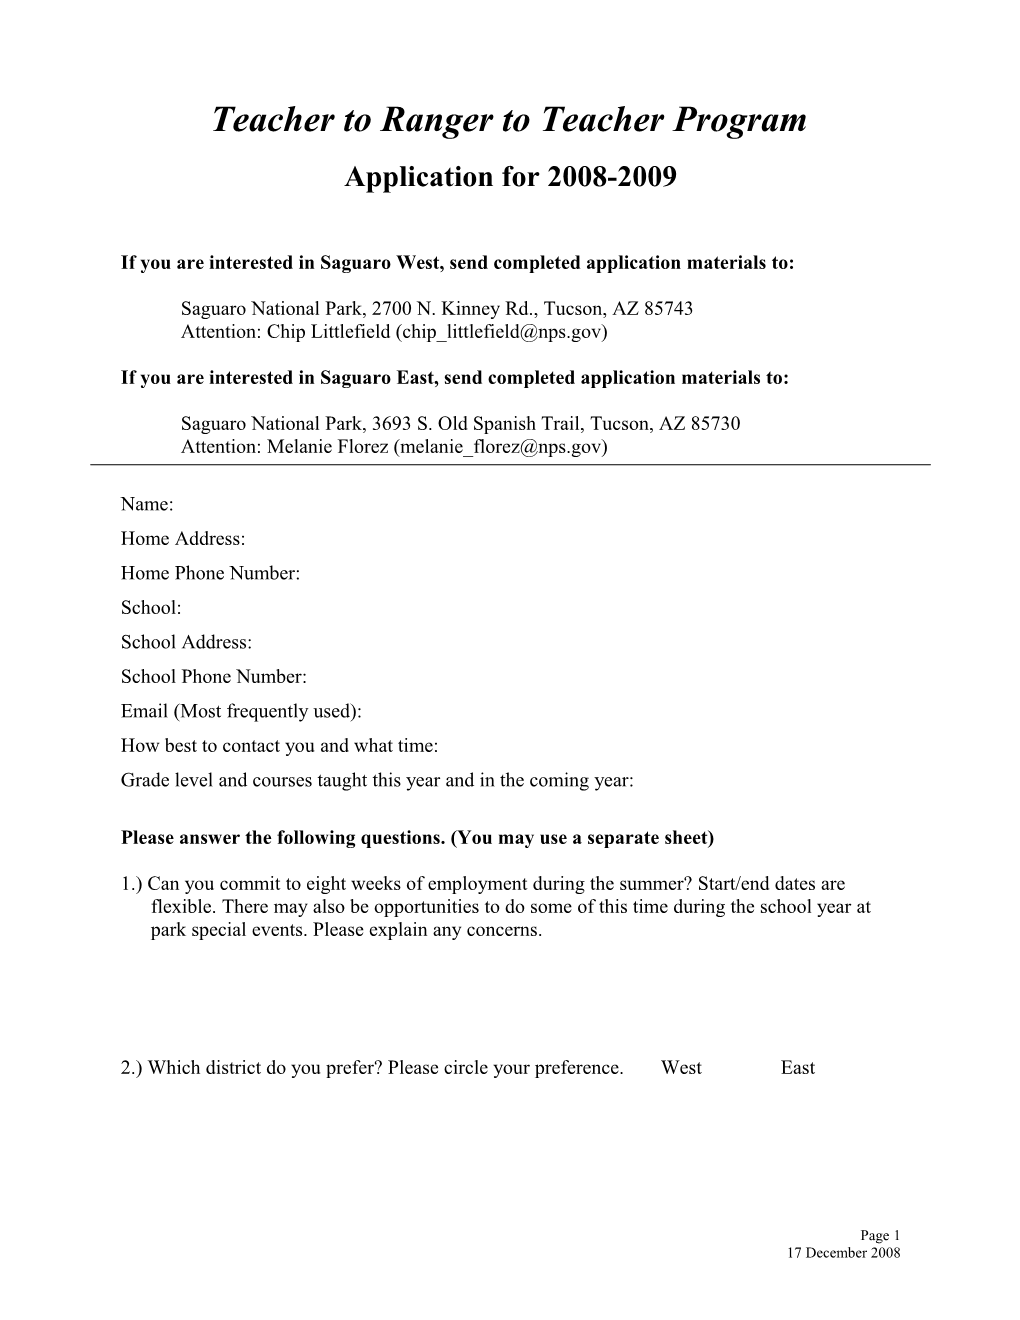 Application for the Teacher to Ranger to Teacher Program